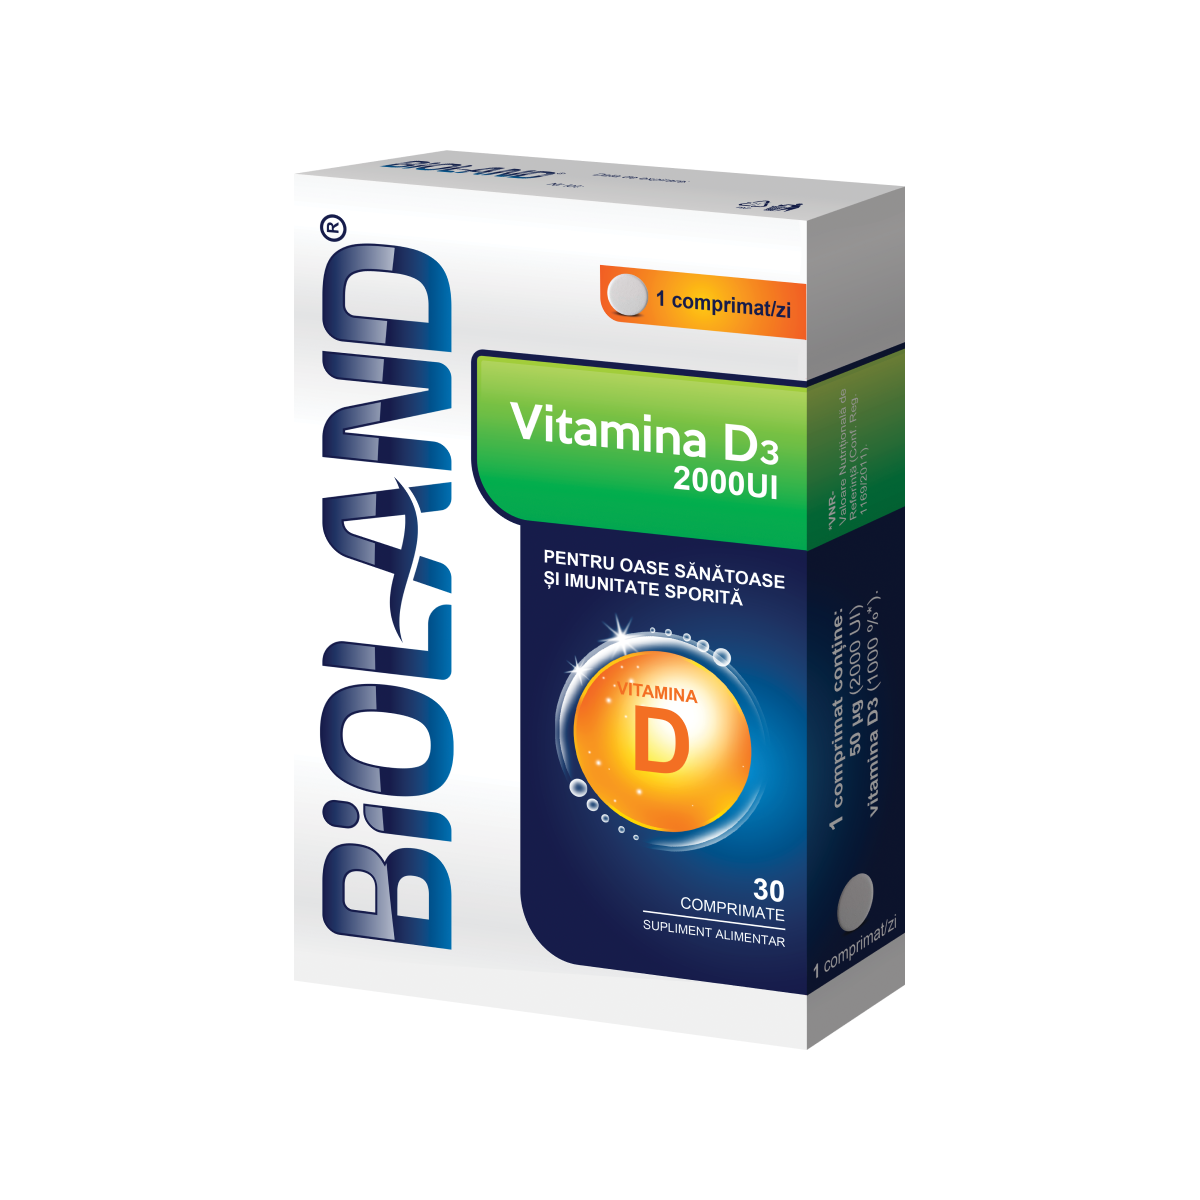 Vitamina D3 2000UI Bioland, 30 comprimate, Biofarm